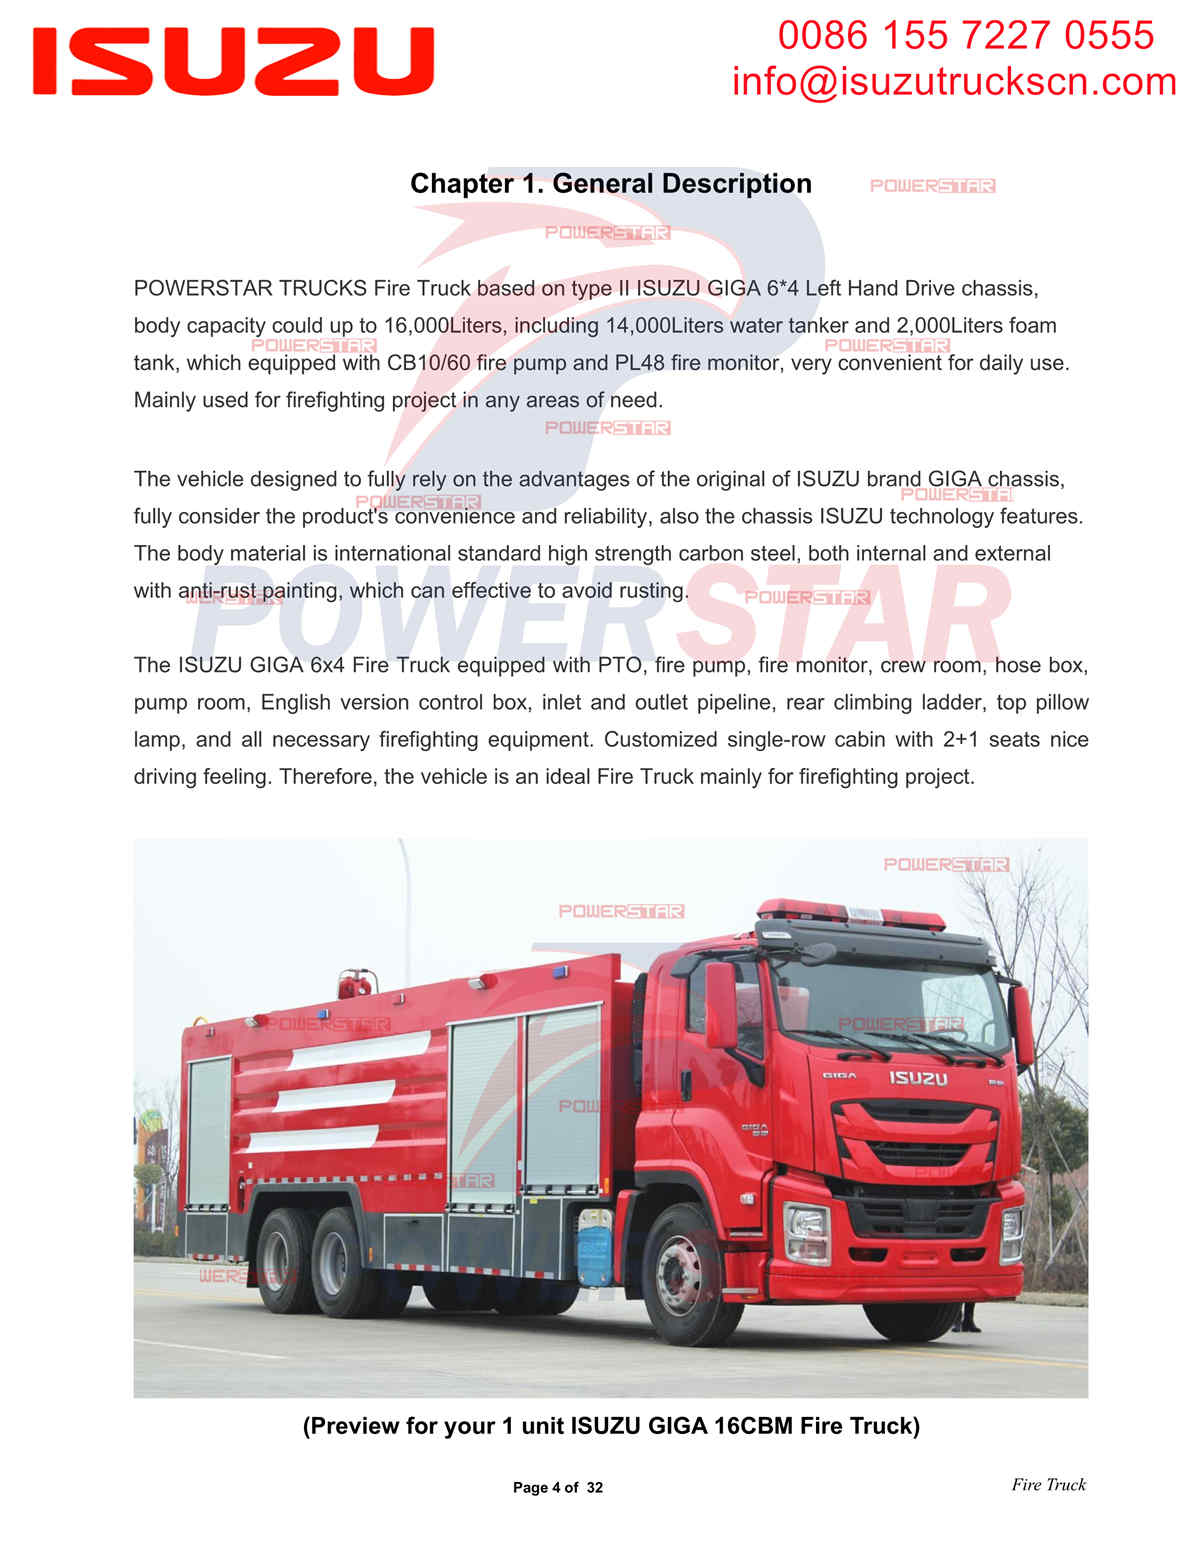 Exportación manual del camión de bomberos POWERSTAR ISUZU a países de Oriente Medio